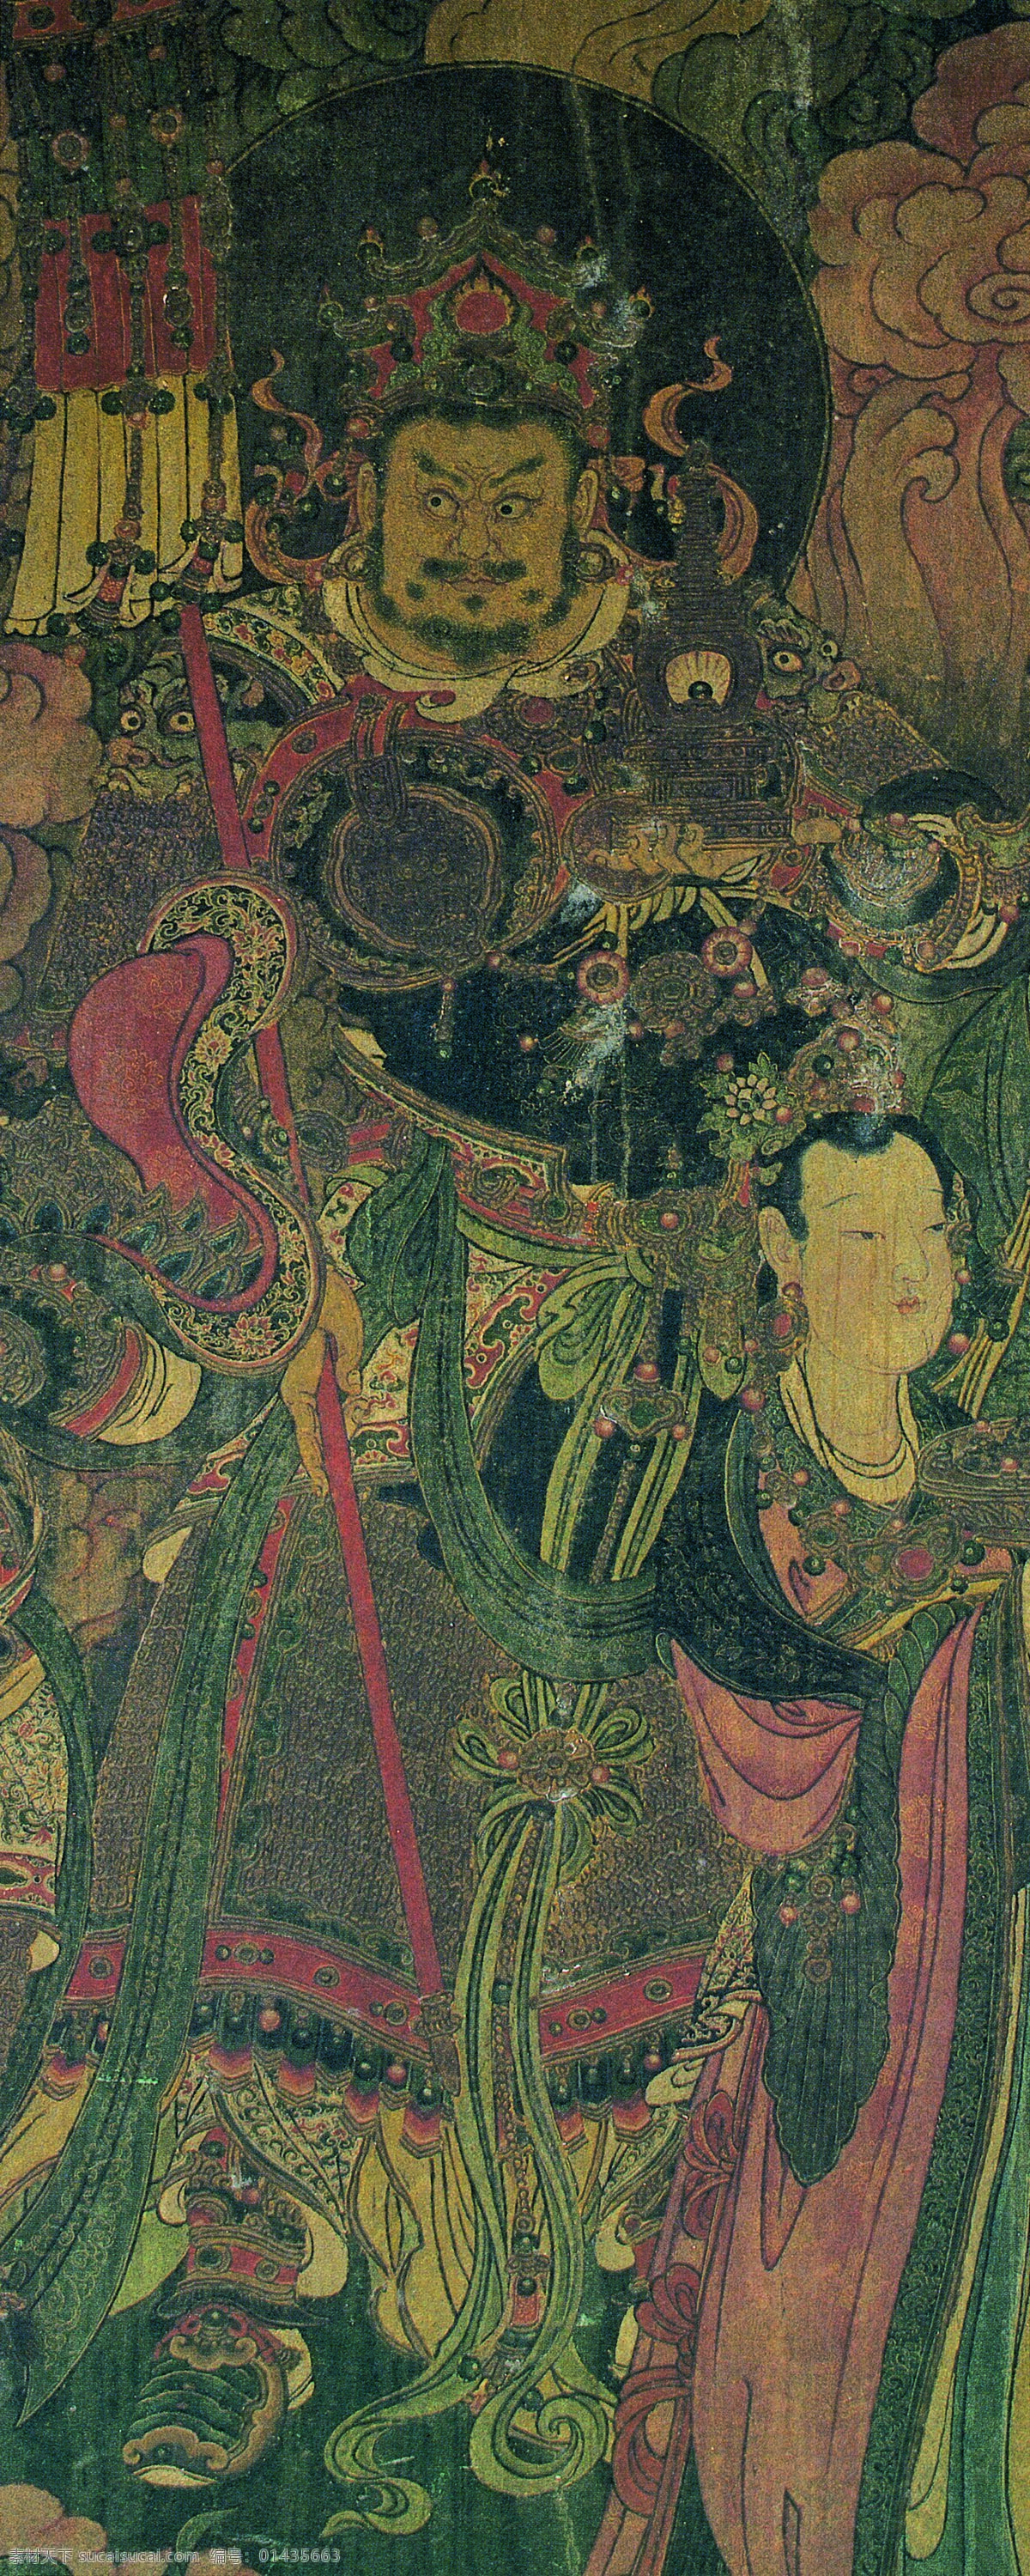 法海 寺 壁画 北方 多闻 天王 设计素材 中国古典 壁画世界 书画美术 灰色